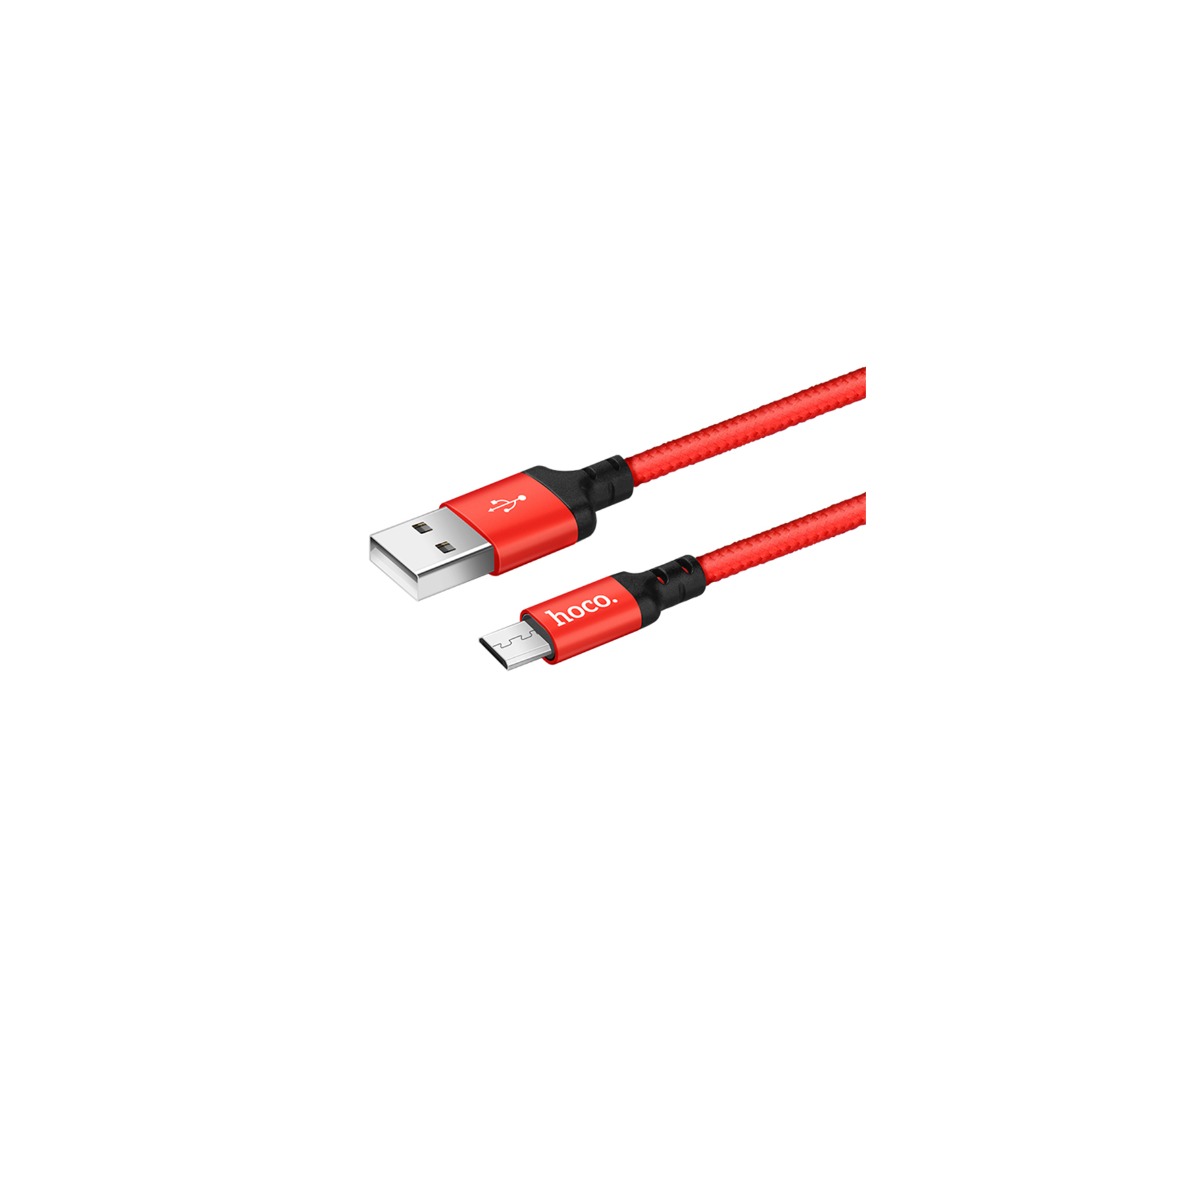 Cablu Micro Usb cu incarcare rapida Hoco X14 Rosu cu Negru 2m thumb